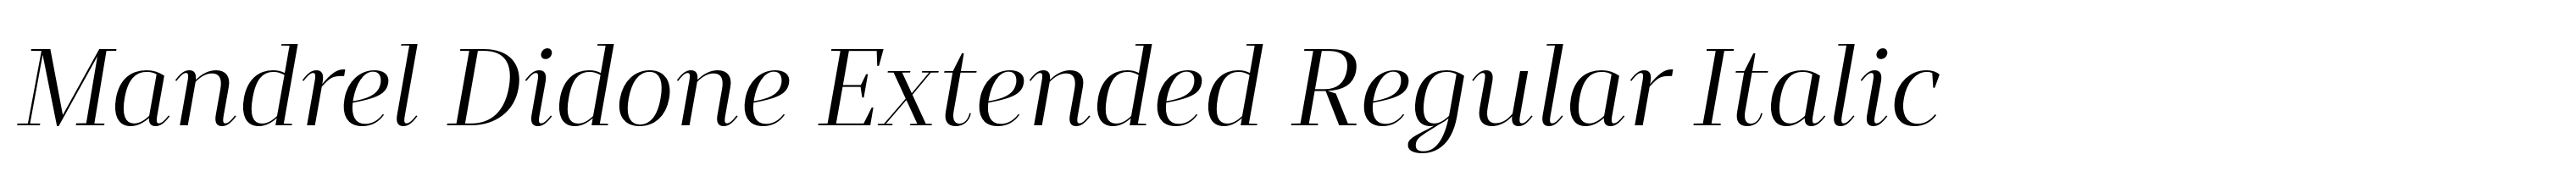 Mandrel Didone Extended Regular Italic